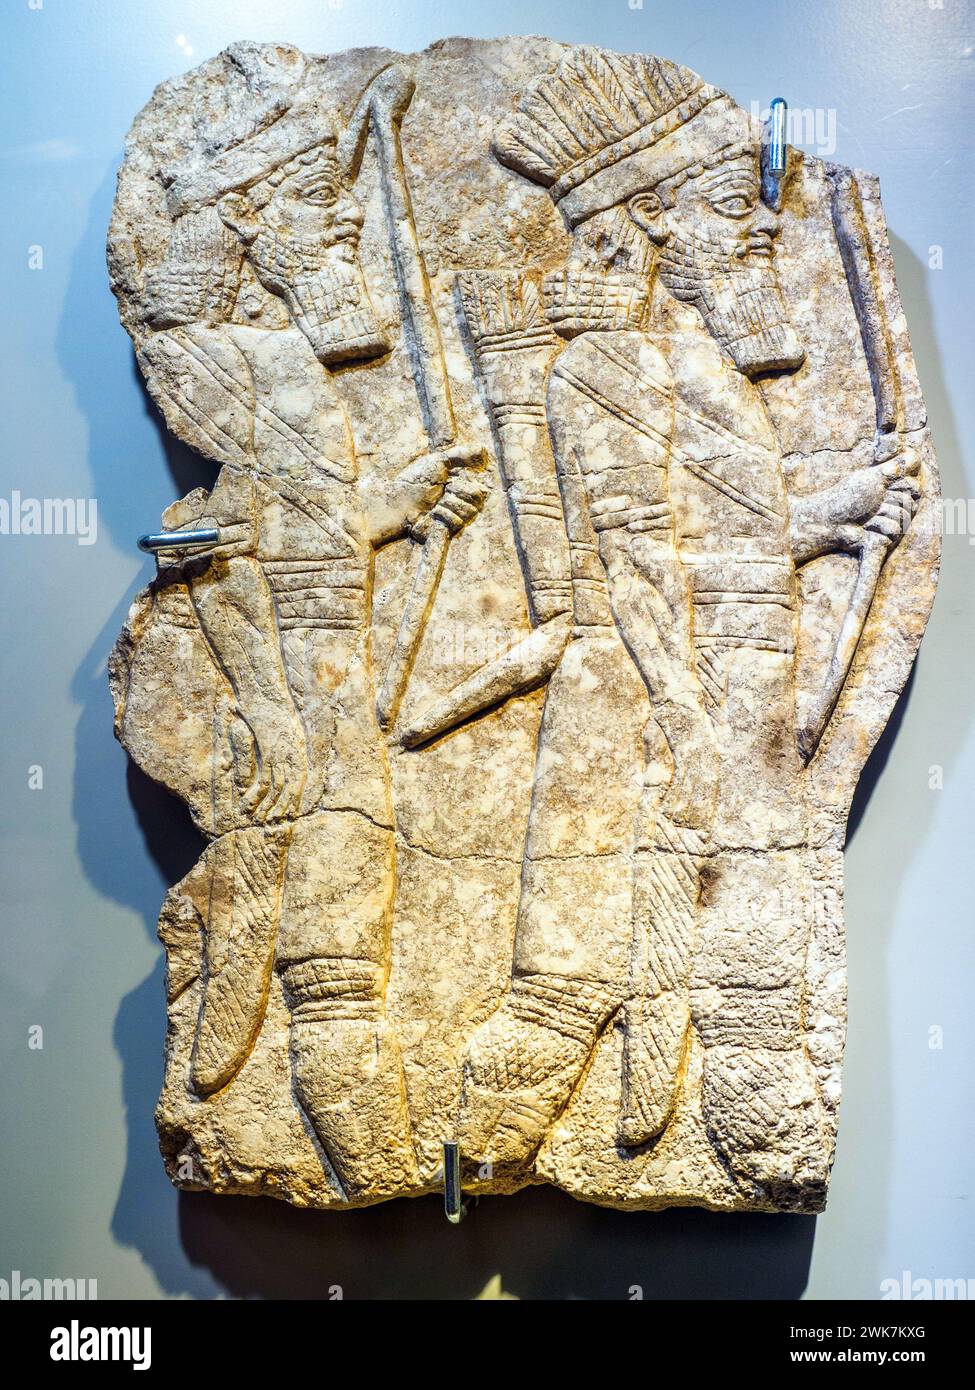 Arcieri elamiti in uniforme di gala - Impero neo-assiriano, regno di Ashurbanipal (668 - 627 a.C.) - calcare - Ninive (Kuyunjik), Palazzo Nord - Museo di Scultura Antica Giovanni Barracco, Roma, Italia Foto Stock